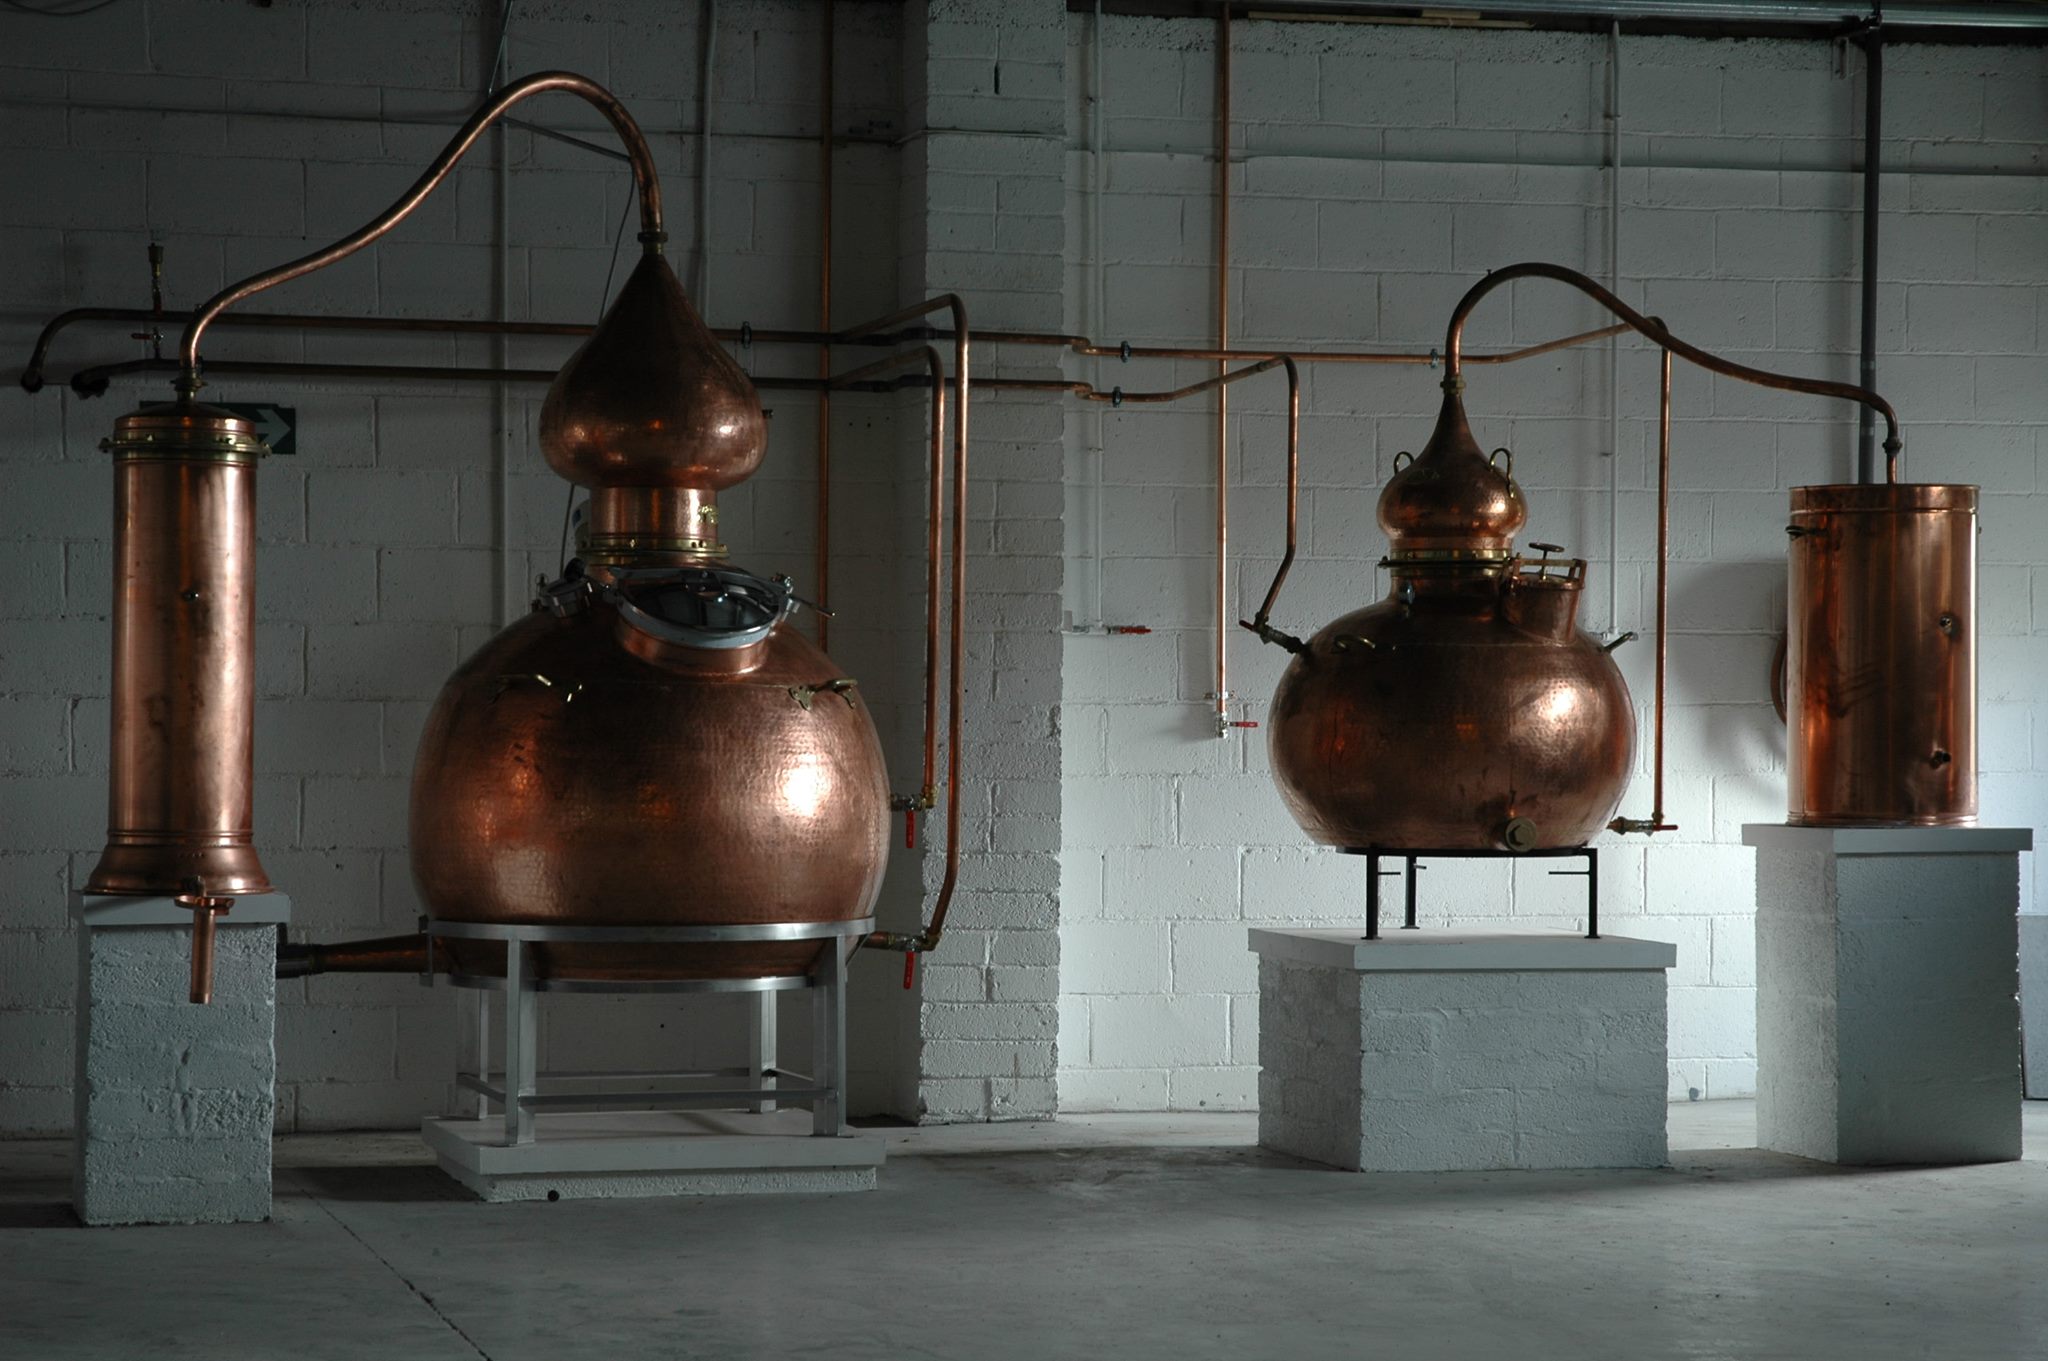 Lough Measc Distillery